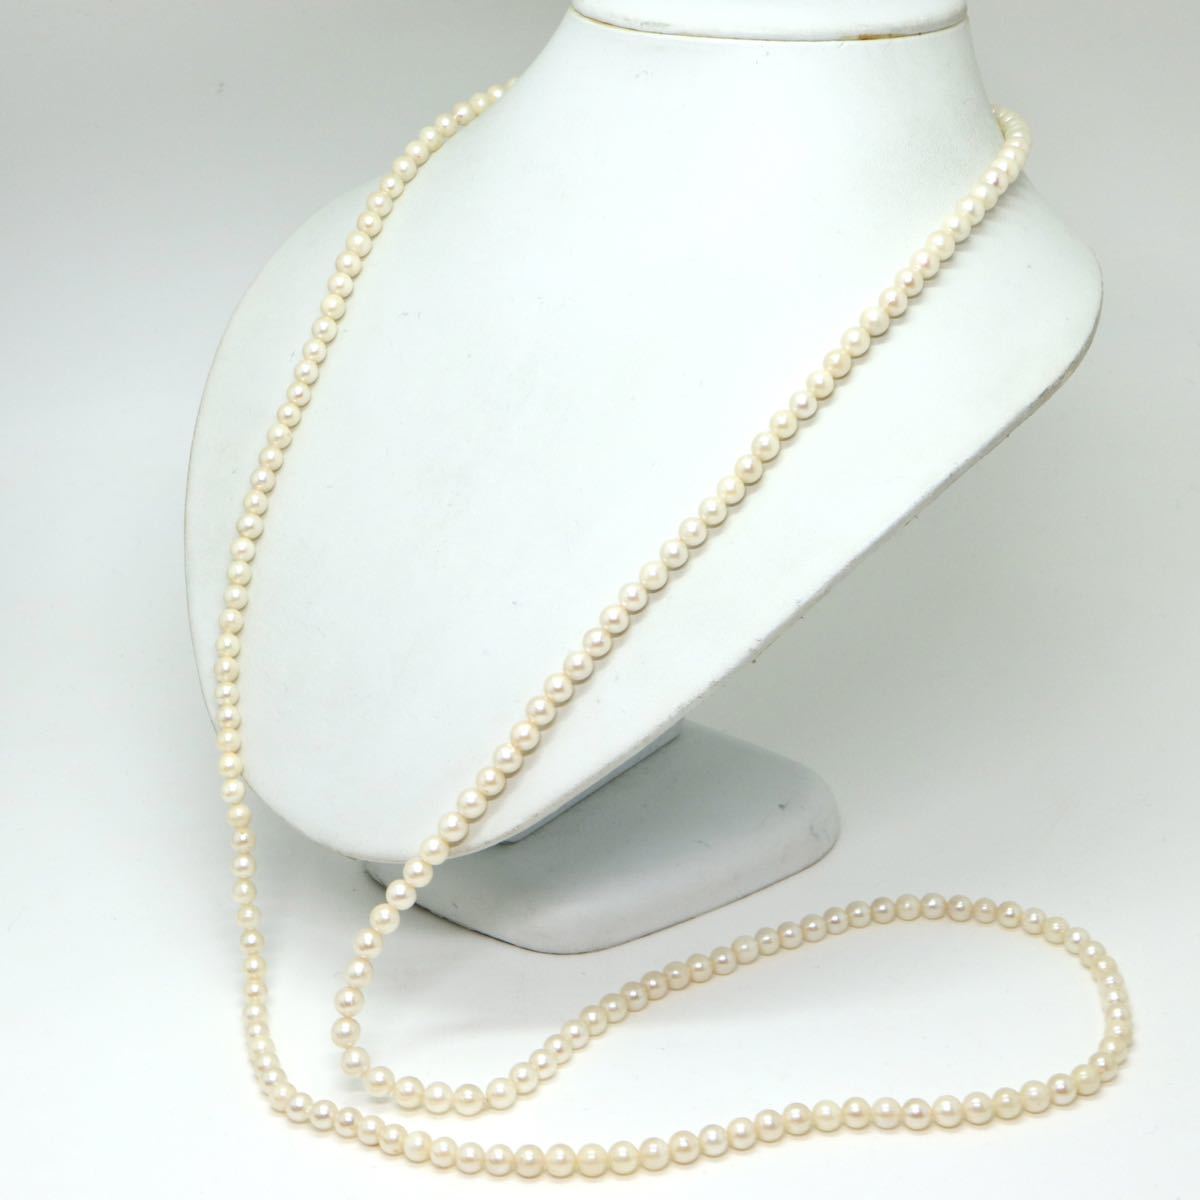 ソーティング付き!!《アコヤ本真珠ロングネックレス》D 5.5-6.0mm珠 49.8g 106.5cm pearl necklace ジュエリー jewelry DE0/EA0_画像5